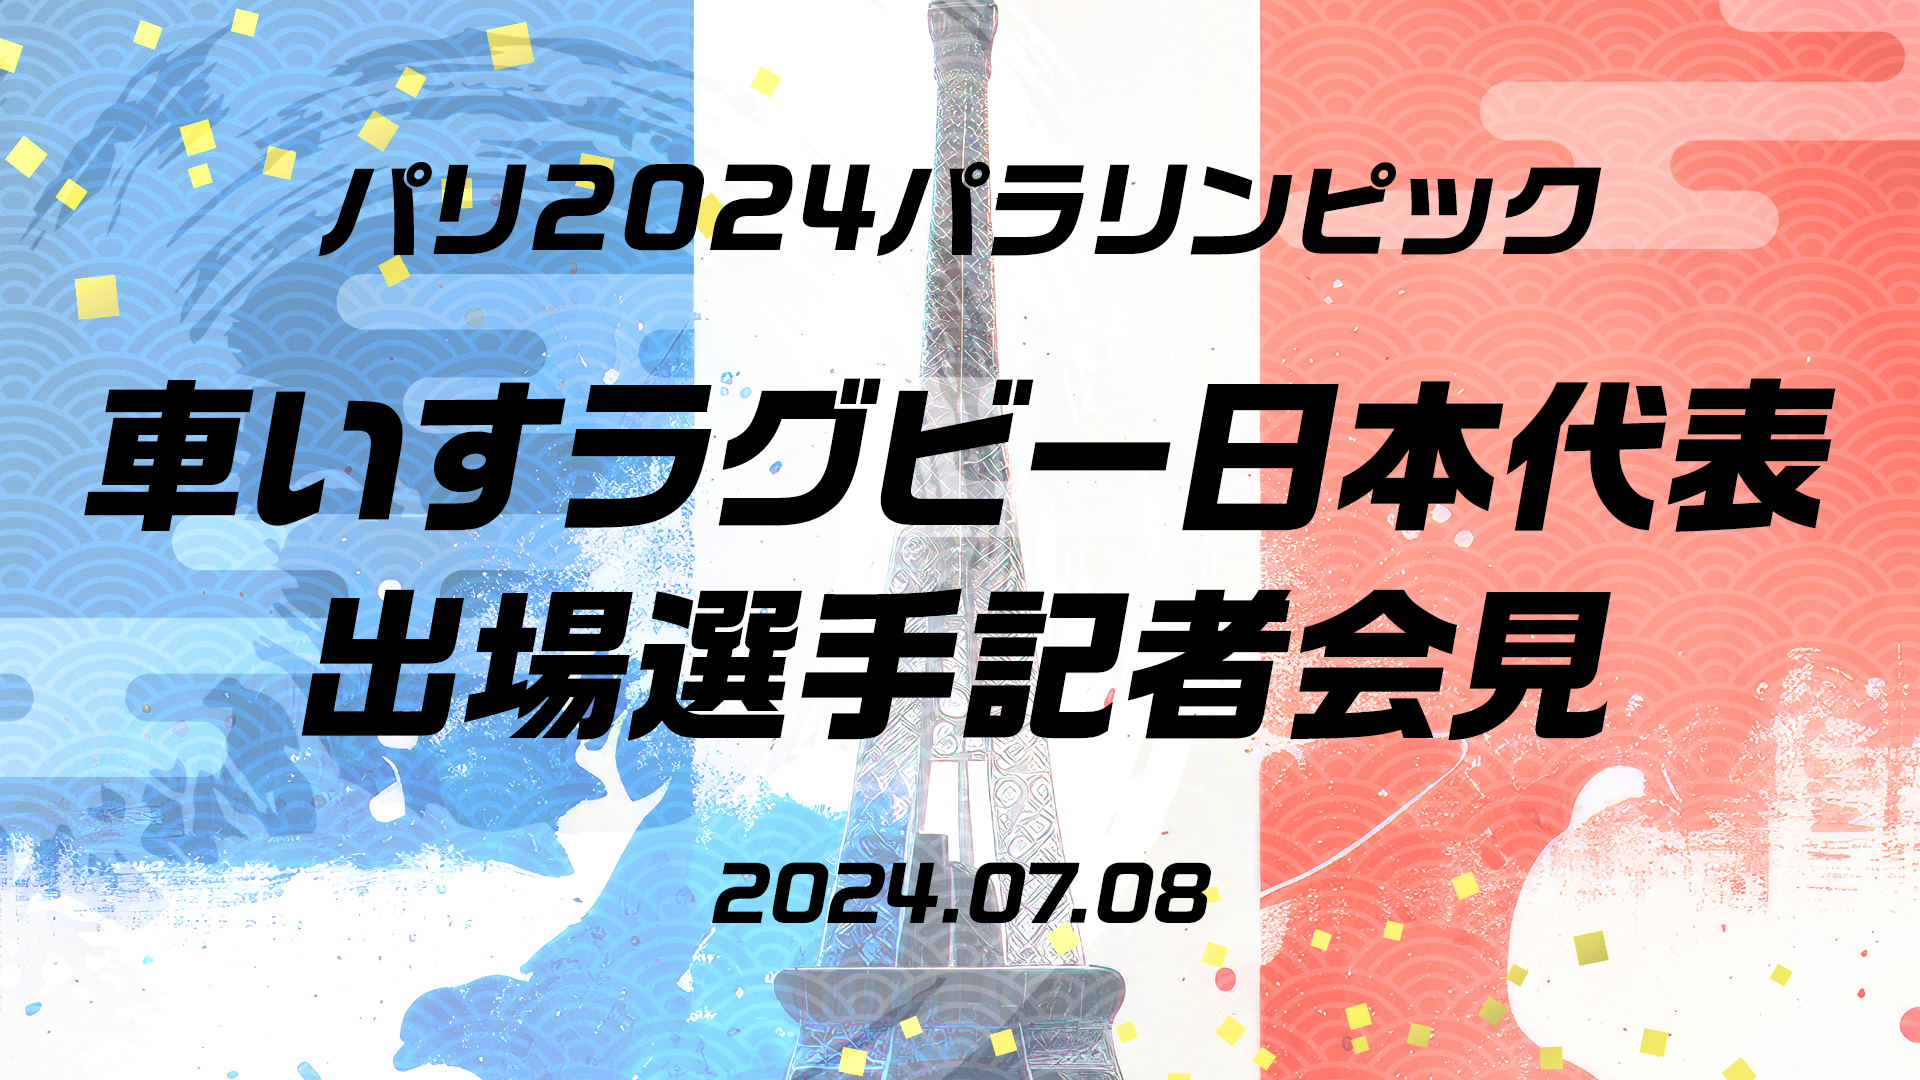 パリ大会 「車いすラグビー日本代表 出場選手発表会」の開催について